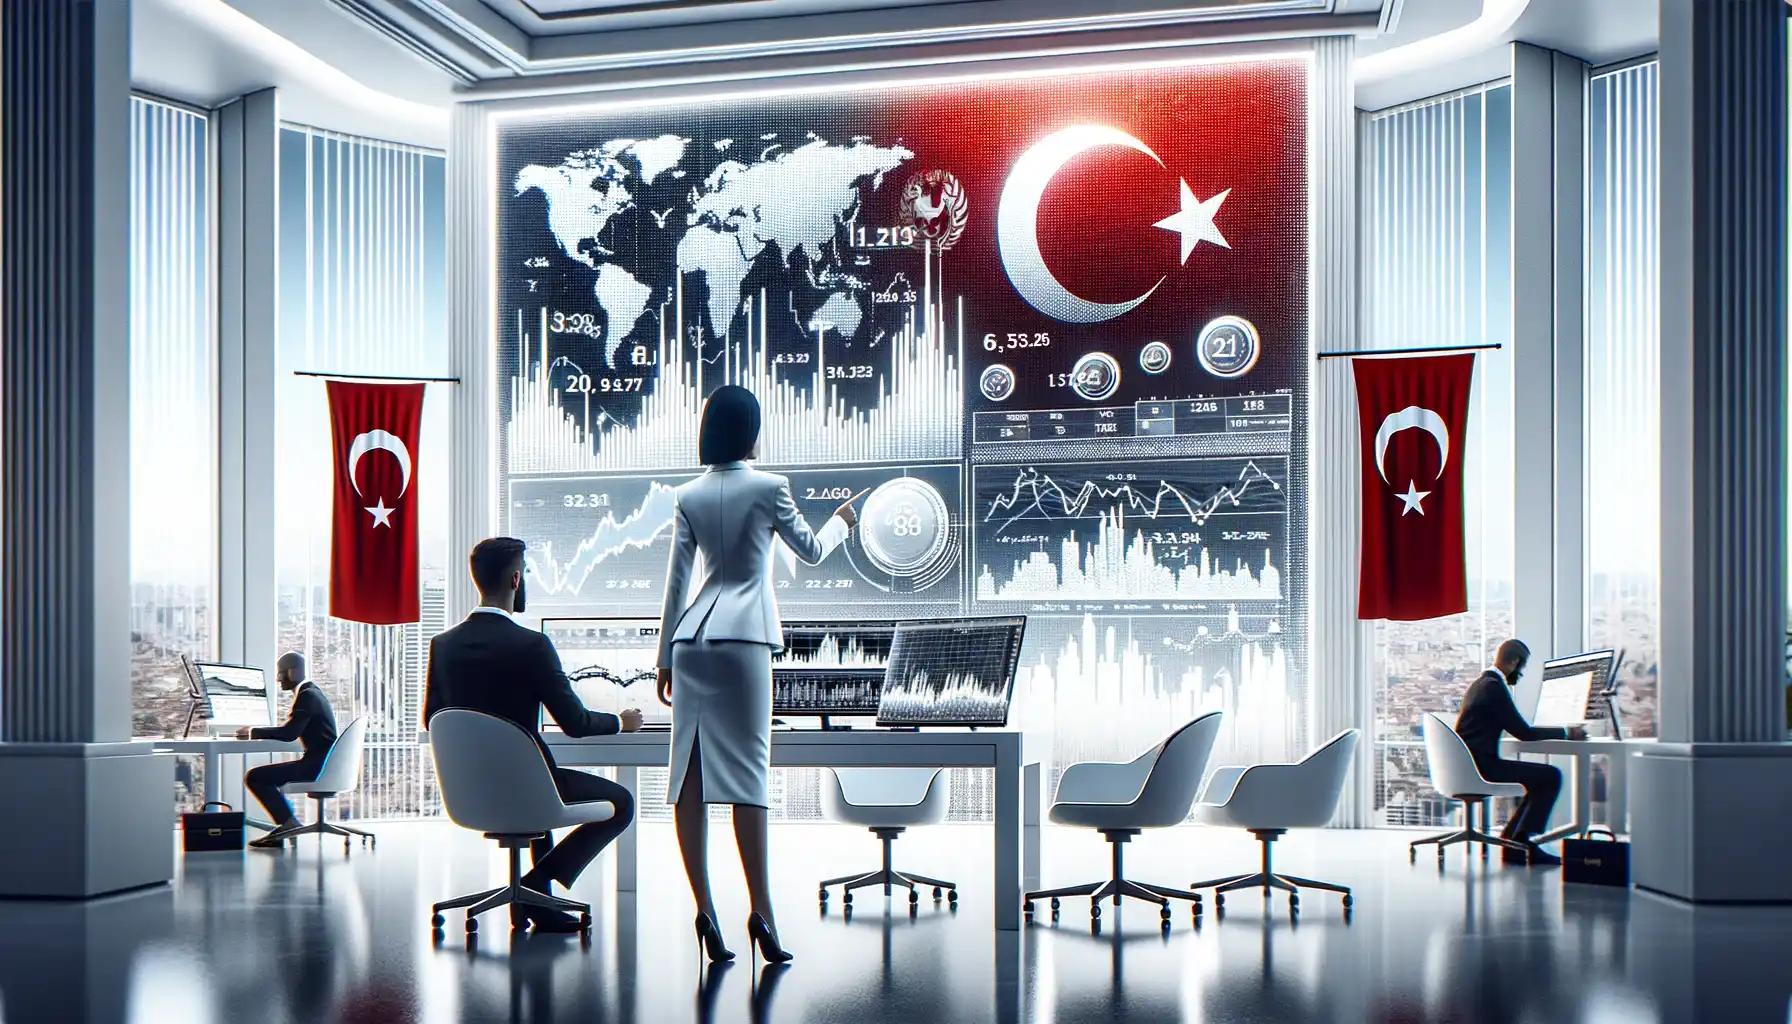 بهترین بروکر فارکس در ترکیه | ترکیه بهشت تریدرها